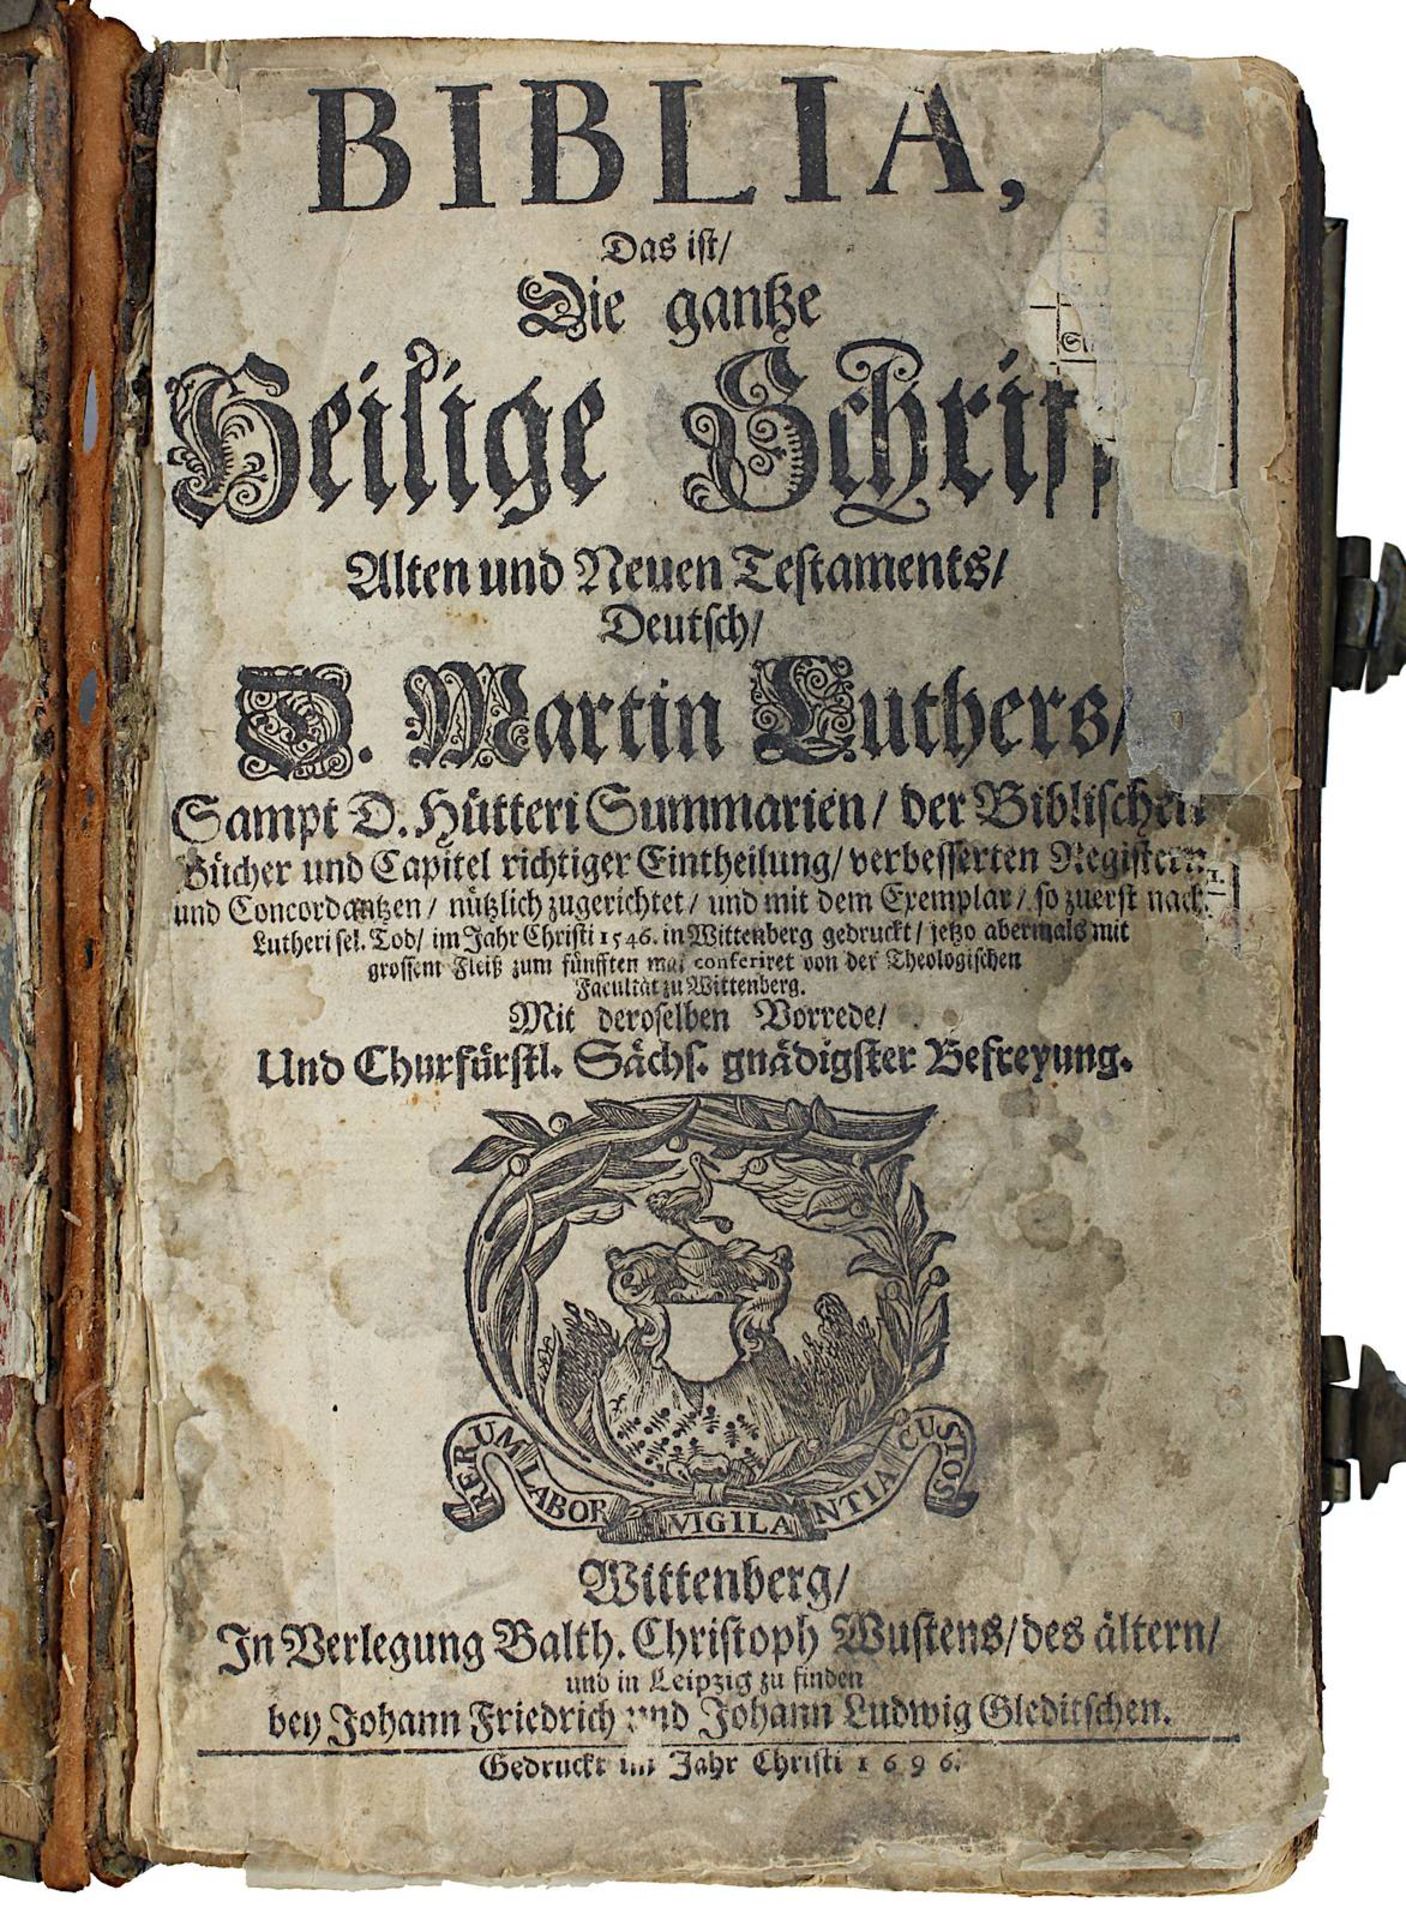 "Biblia, Das ist die ganze Heilige Schrift Alten und Neuen Testaments", deutsch D. Martin Luther,